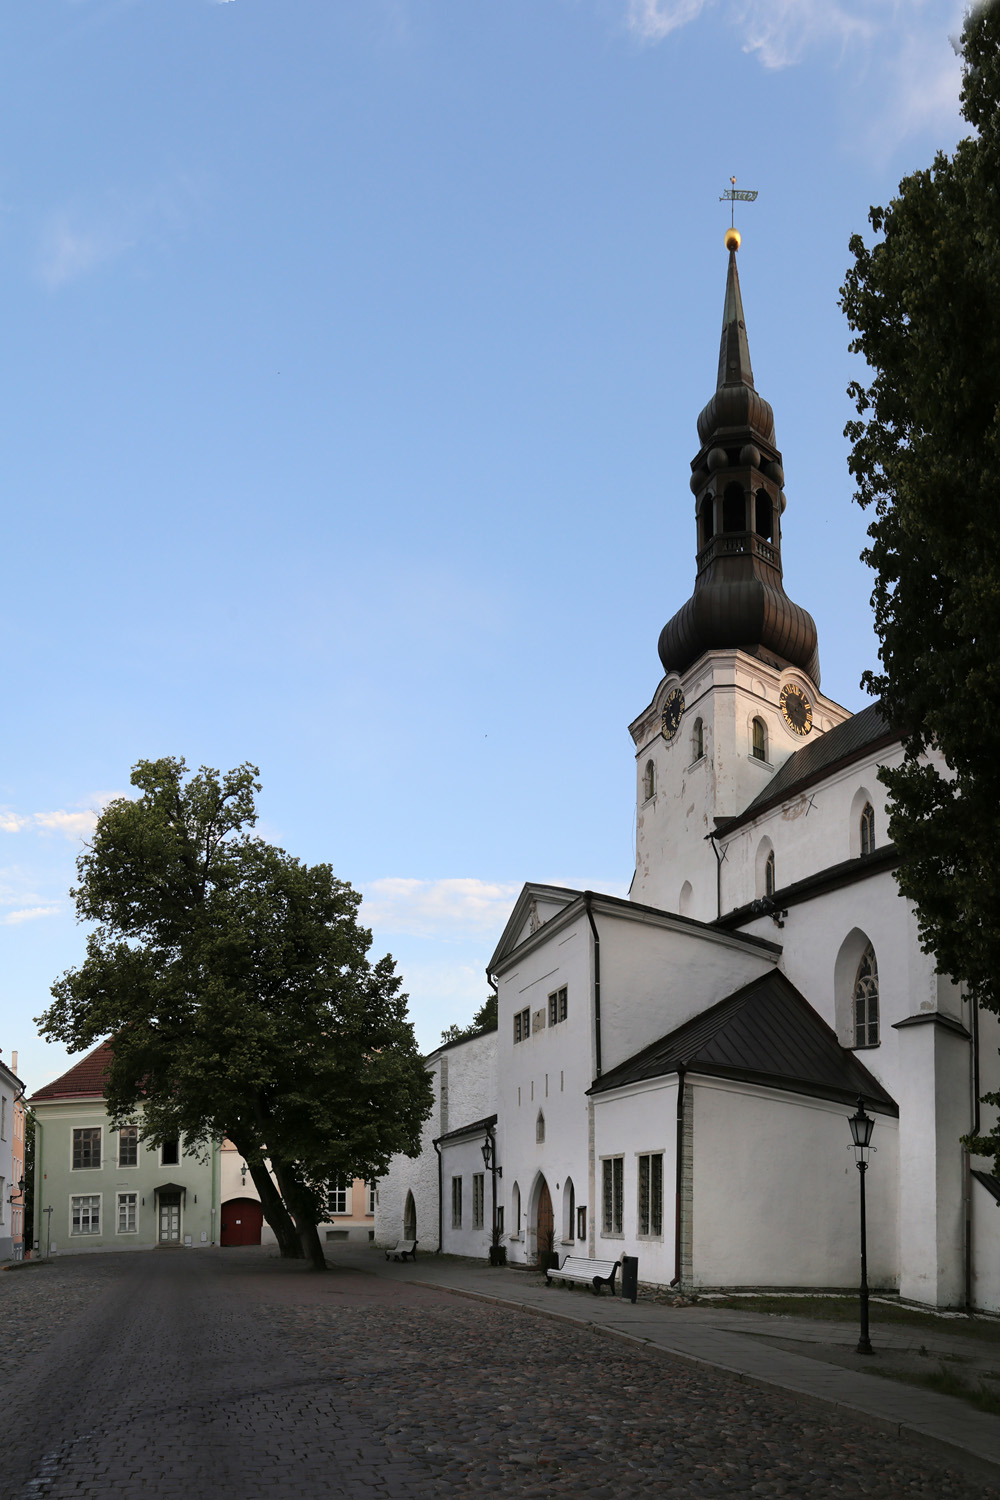 bill-hocker-church-tallinn-estonia-2019